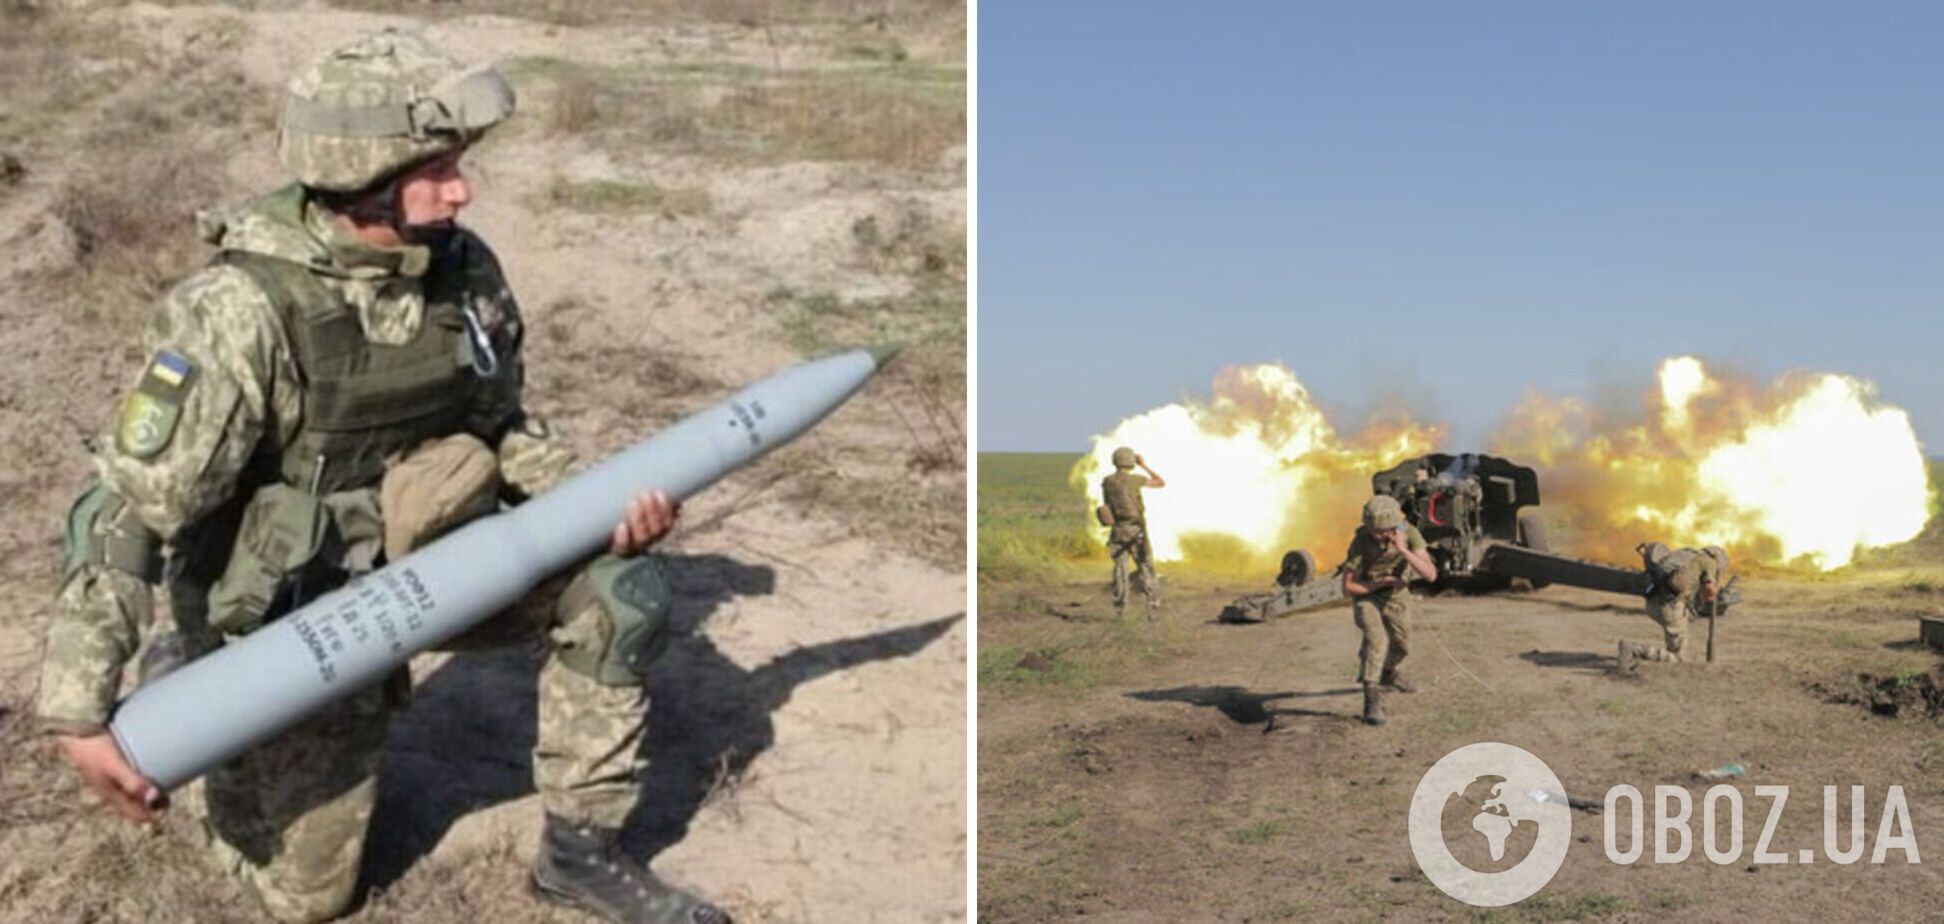 Интенсивность боев в Украине возросла, ВСУ используют до 7 тысяч снарядов в день, – Столтенберг